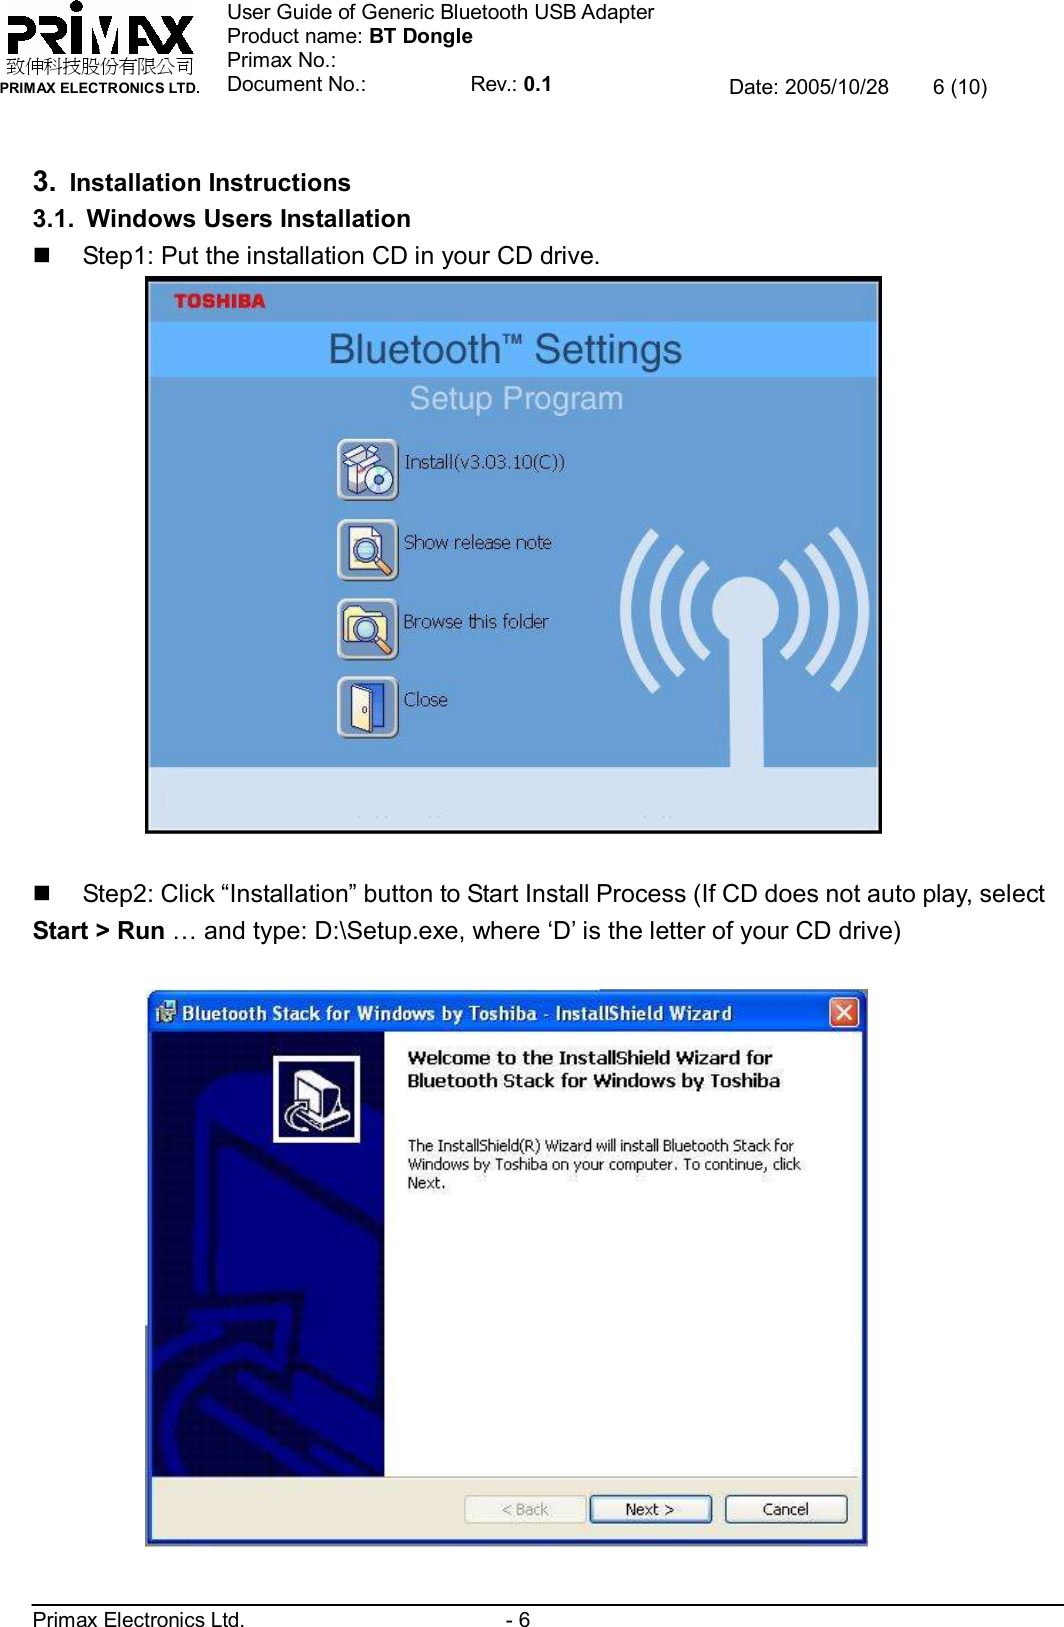    致伸科技股份有限公司 PRIMAX ELECTRONICS LTD. User Guide of Generic Bluetooth USB Adapter Product name: BT Dongle Primax No.: Document No.:          Rev.: 0.1 Date: 2005/10/28  6 (10)  Primax Electronics Ltd.                         - 6  3. Installation Instructions 3.1. Windows Users Installation n Step1: Put the installation CD in your CD drive.   n Step2: Click “Installation” button to Start Install Process (If CD does not auto play, select Start &gt; Run … and type: D:\Setup.exe, where ‘D’ is the letter of your CD drive)    